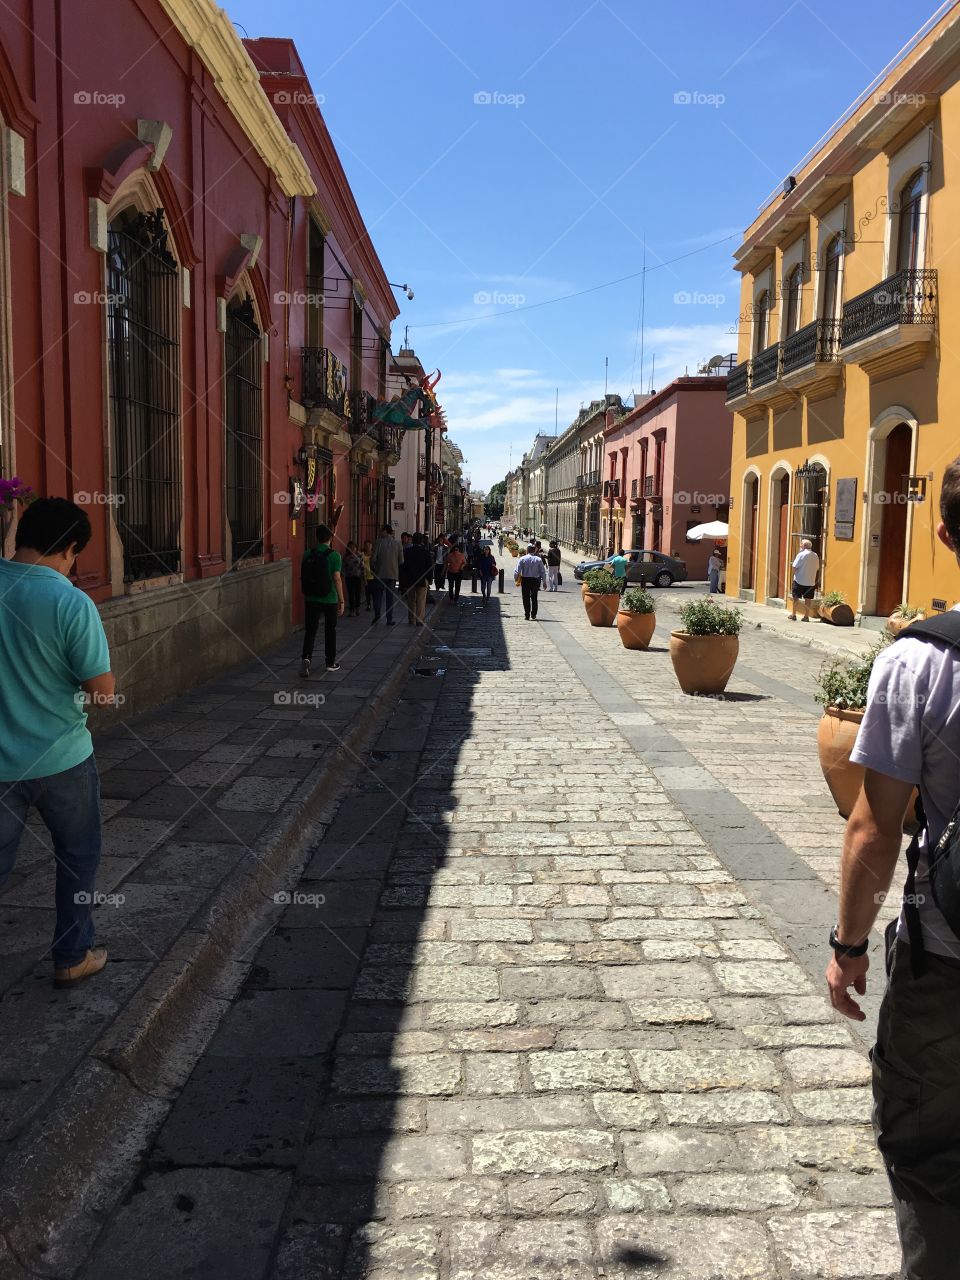 Busy Streets.
Oaxaca, Mexico